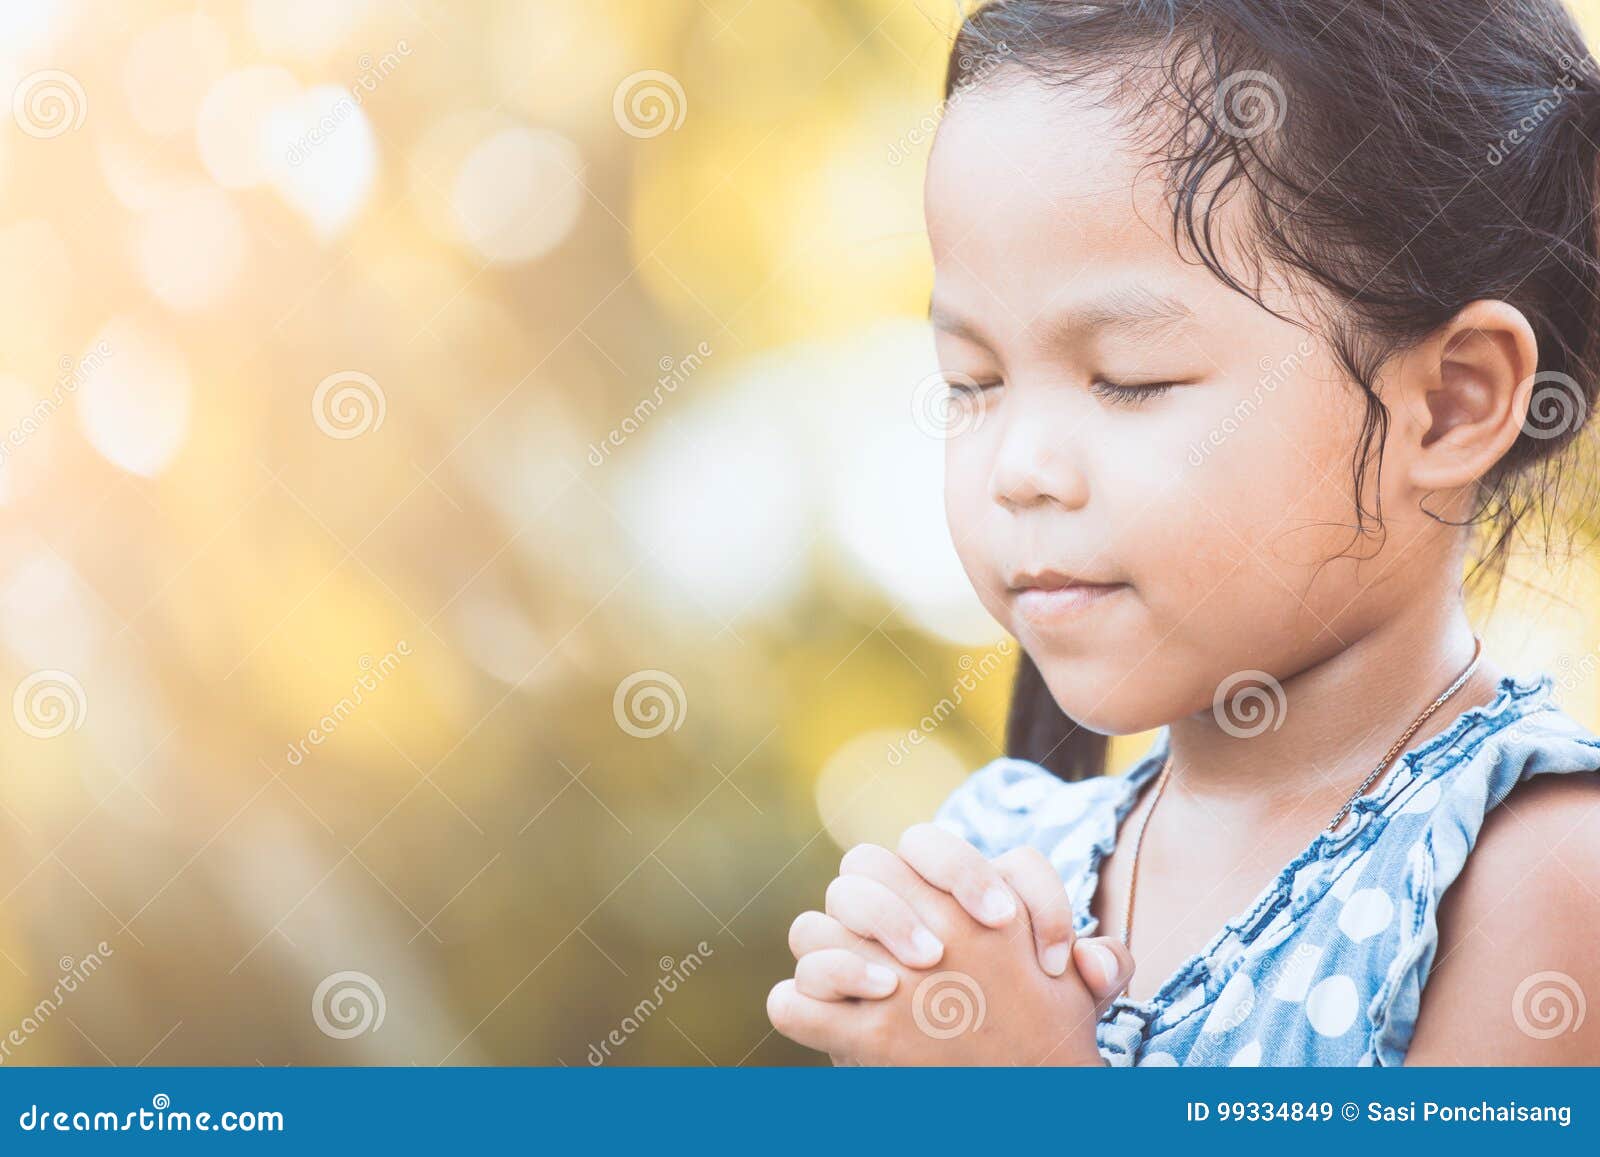 儿童祈祷 库存图片. 图片 包括有 男朋友, 信念, 启发, 敬慕, 祷告, 逗人喜爱, 哔哔, 请求, 基督教 - 13669733